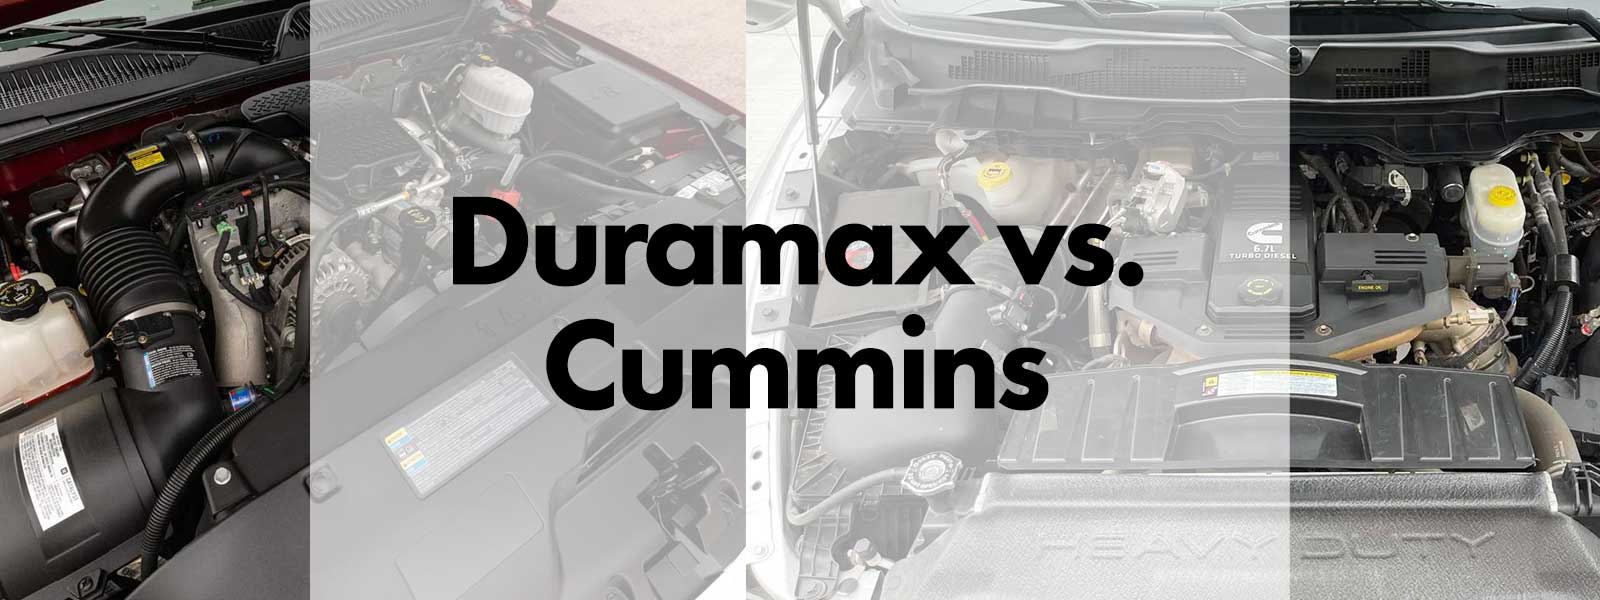 Duramax vs. Cummins